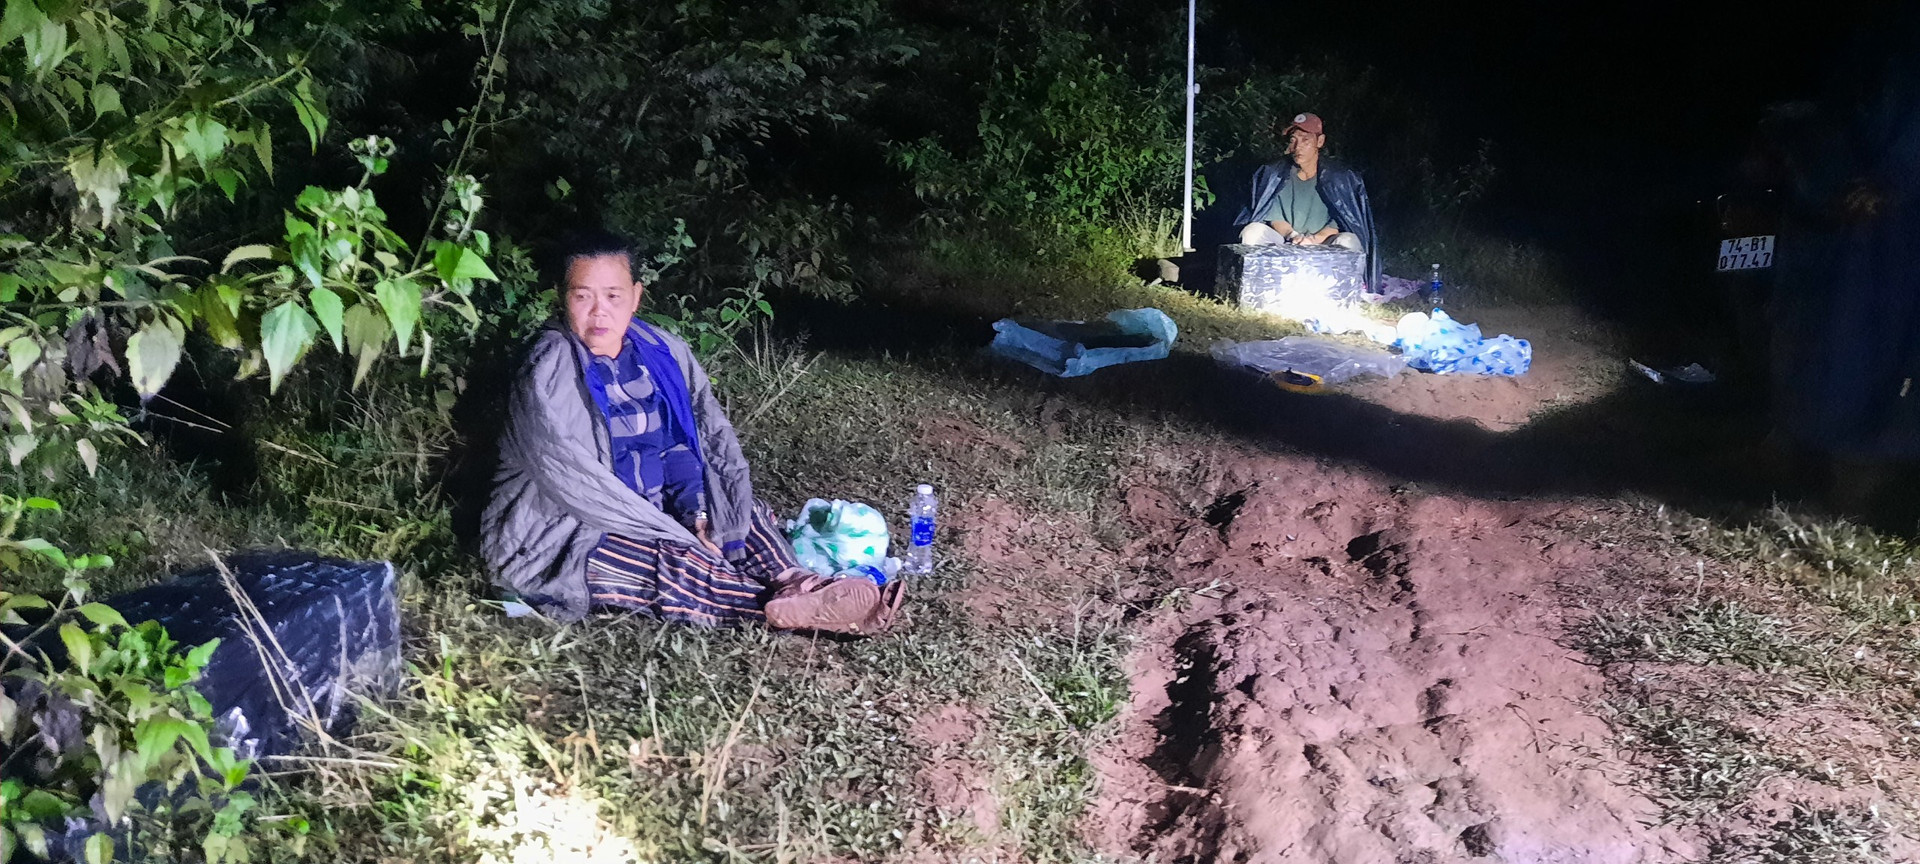 Lực lượng chức năng tại tỉnh Quảng Trị bắt quả tang 2 đối tượng vận chuyển trái phép pháo qua biên giới để nhận tiền công. Ảnh: BĐBP.